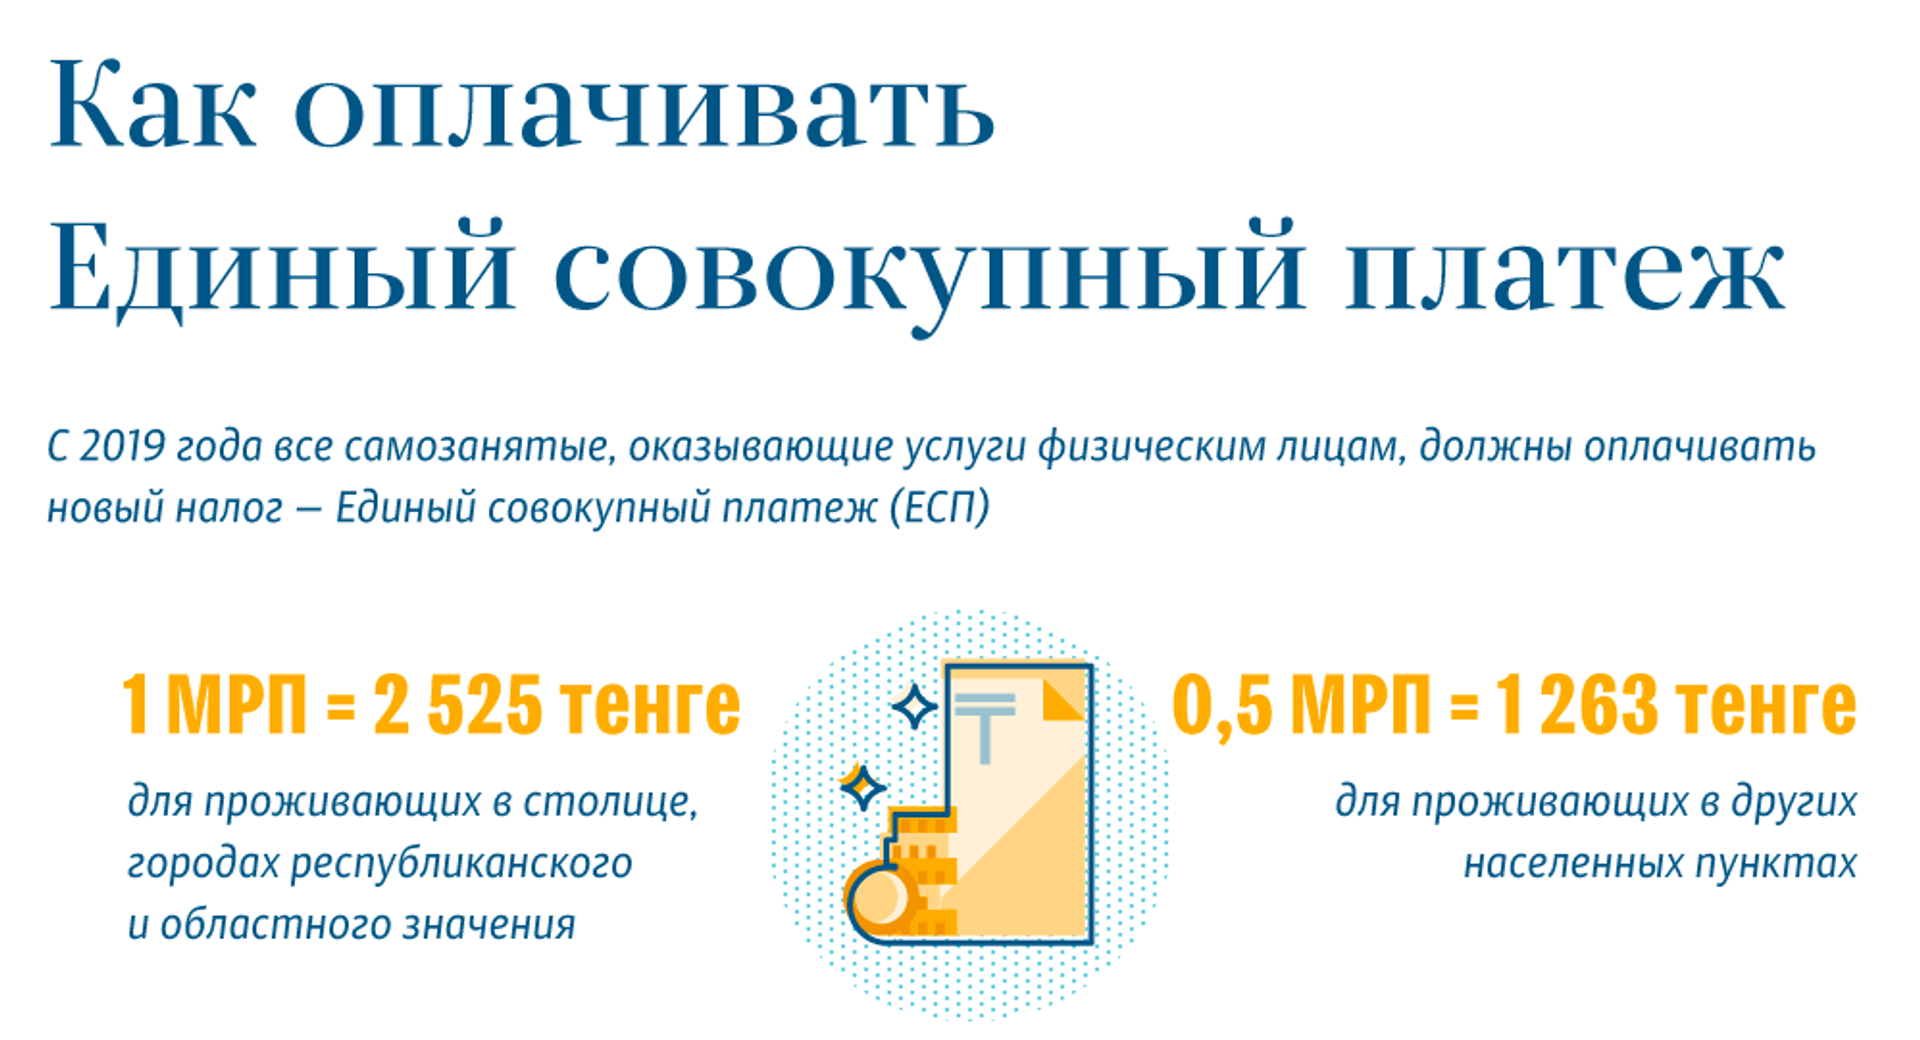 Правила уплаты единого совокупного платежа изменили в Казахстане - Sputnik Казахстан, 1920, 15.04.2021